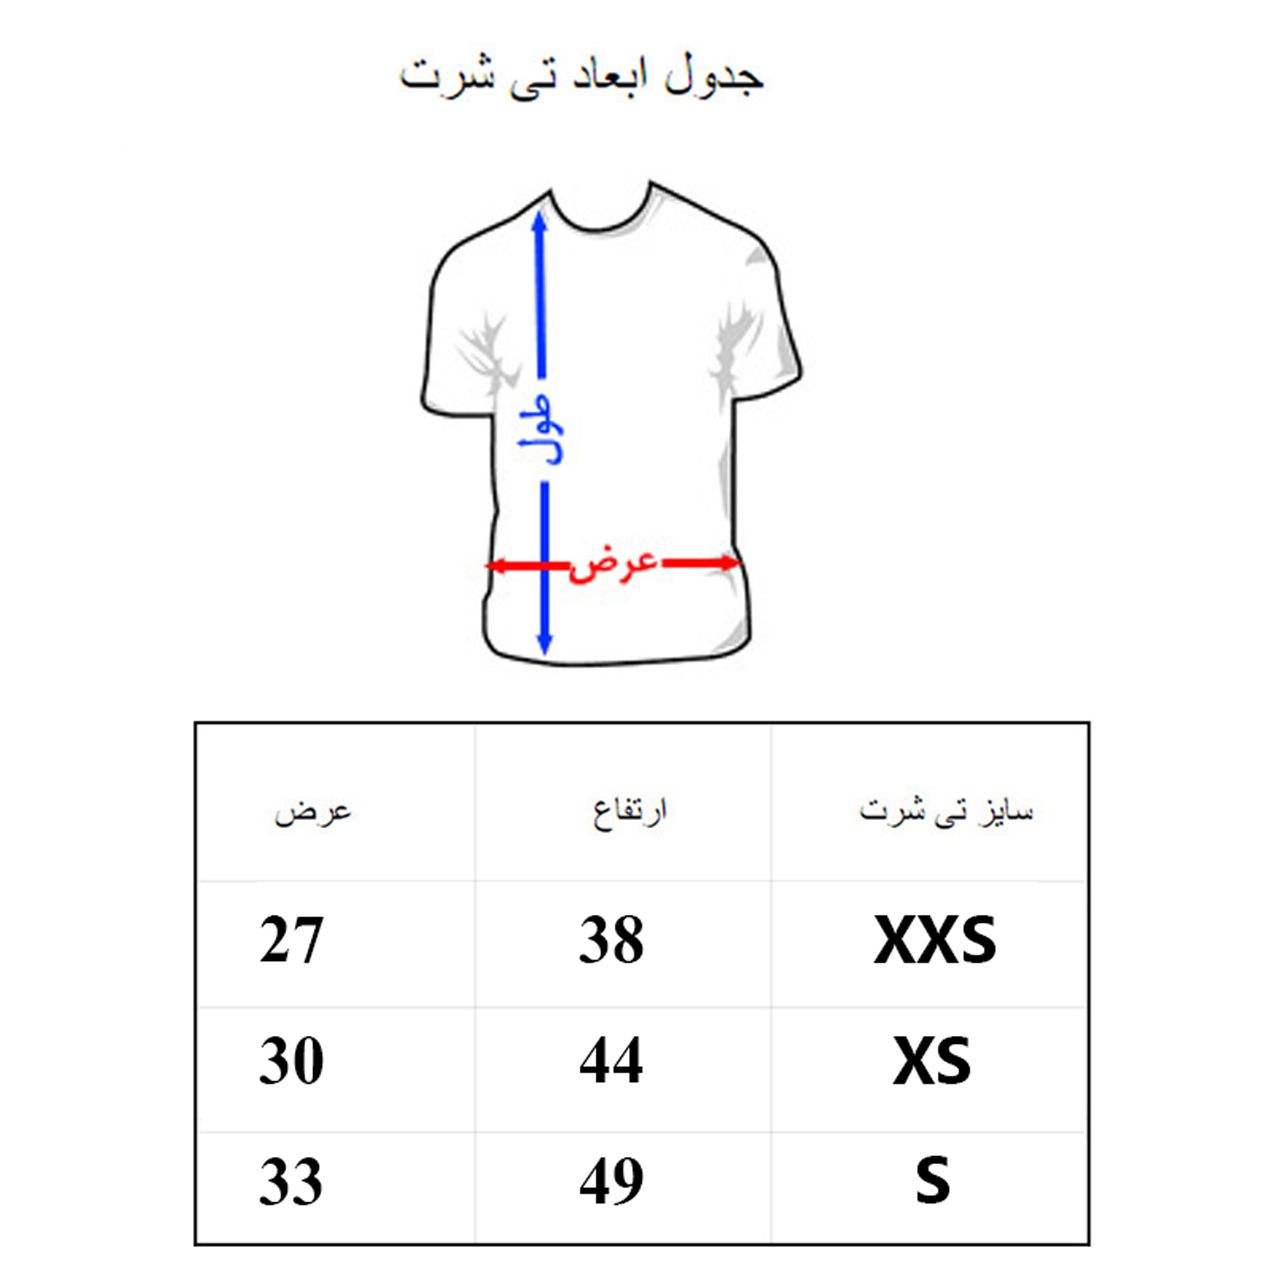 تی شرت آستین کوتاه دخترانه به رسم مدل لوراکس کد 1111 -  - 2